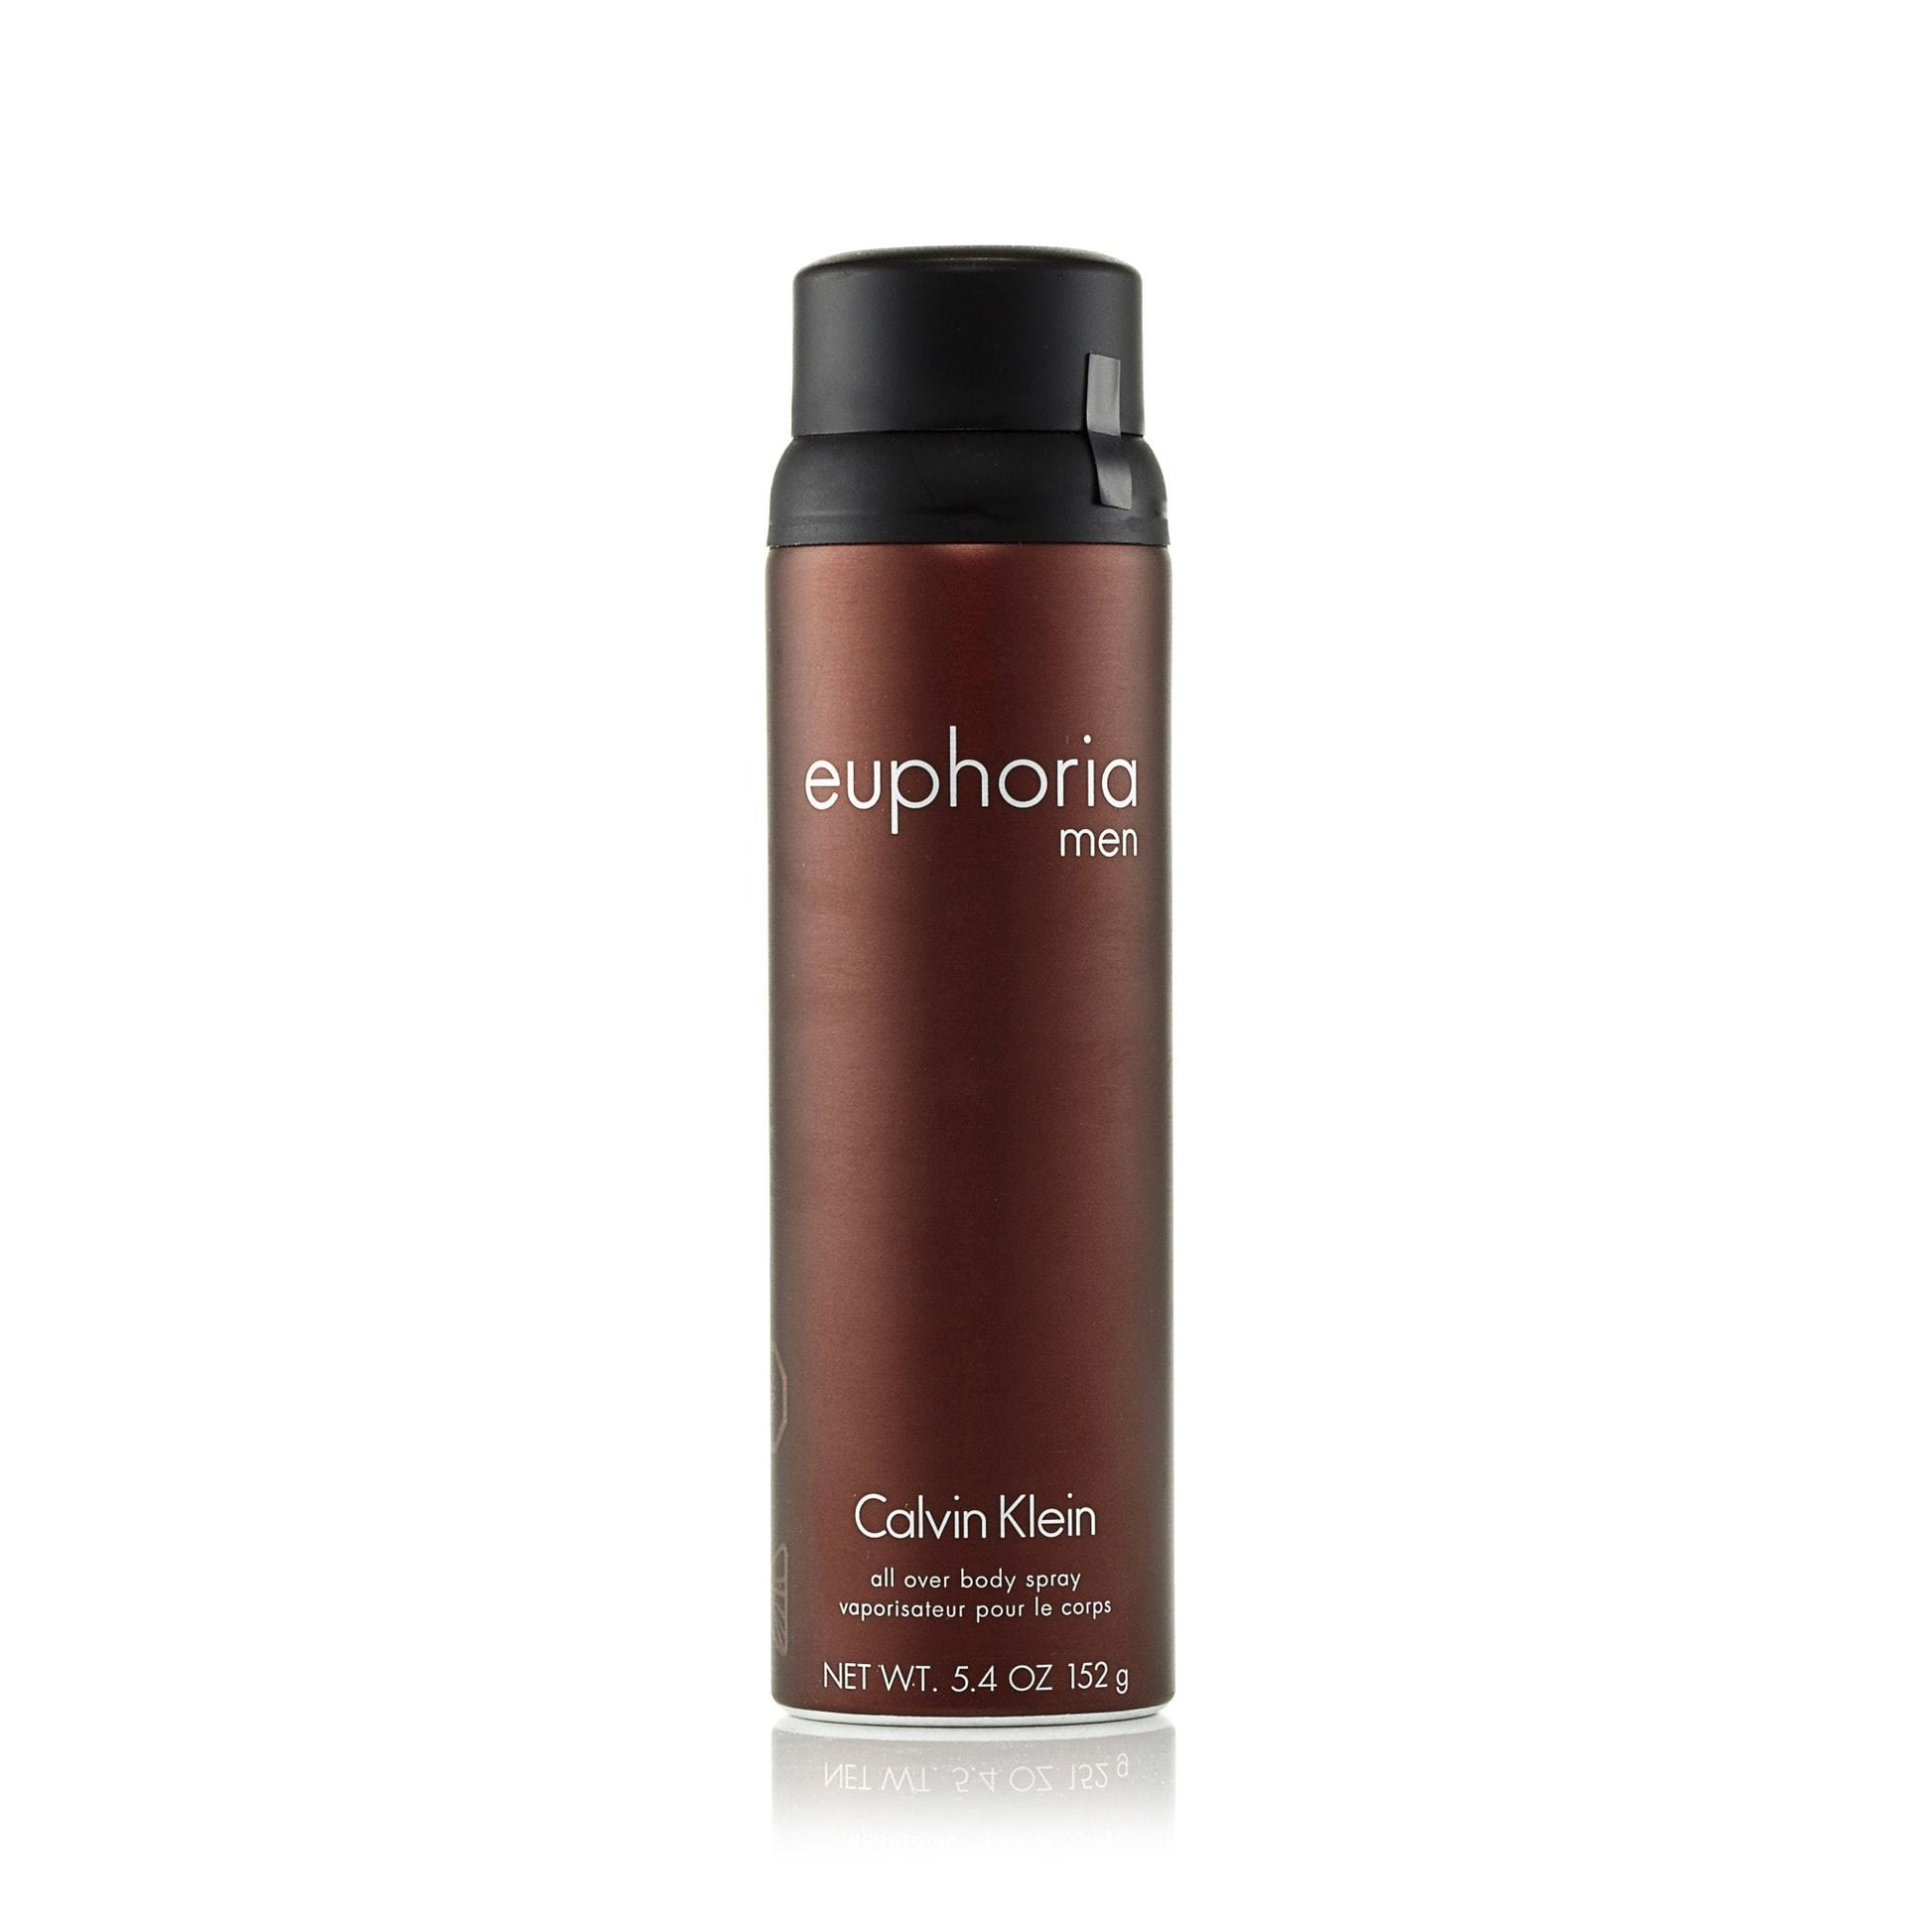 Euphoria Body Spray for Men by Calvin Klein, Product image 1